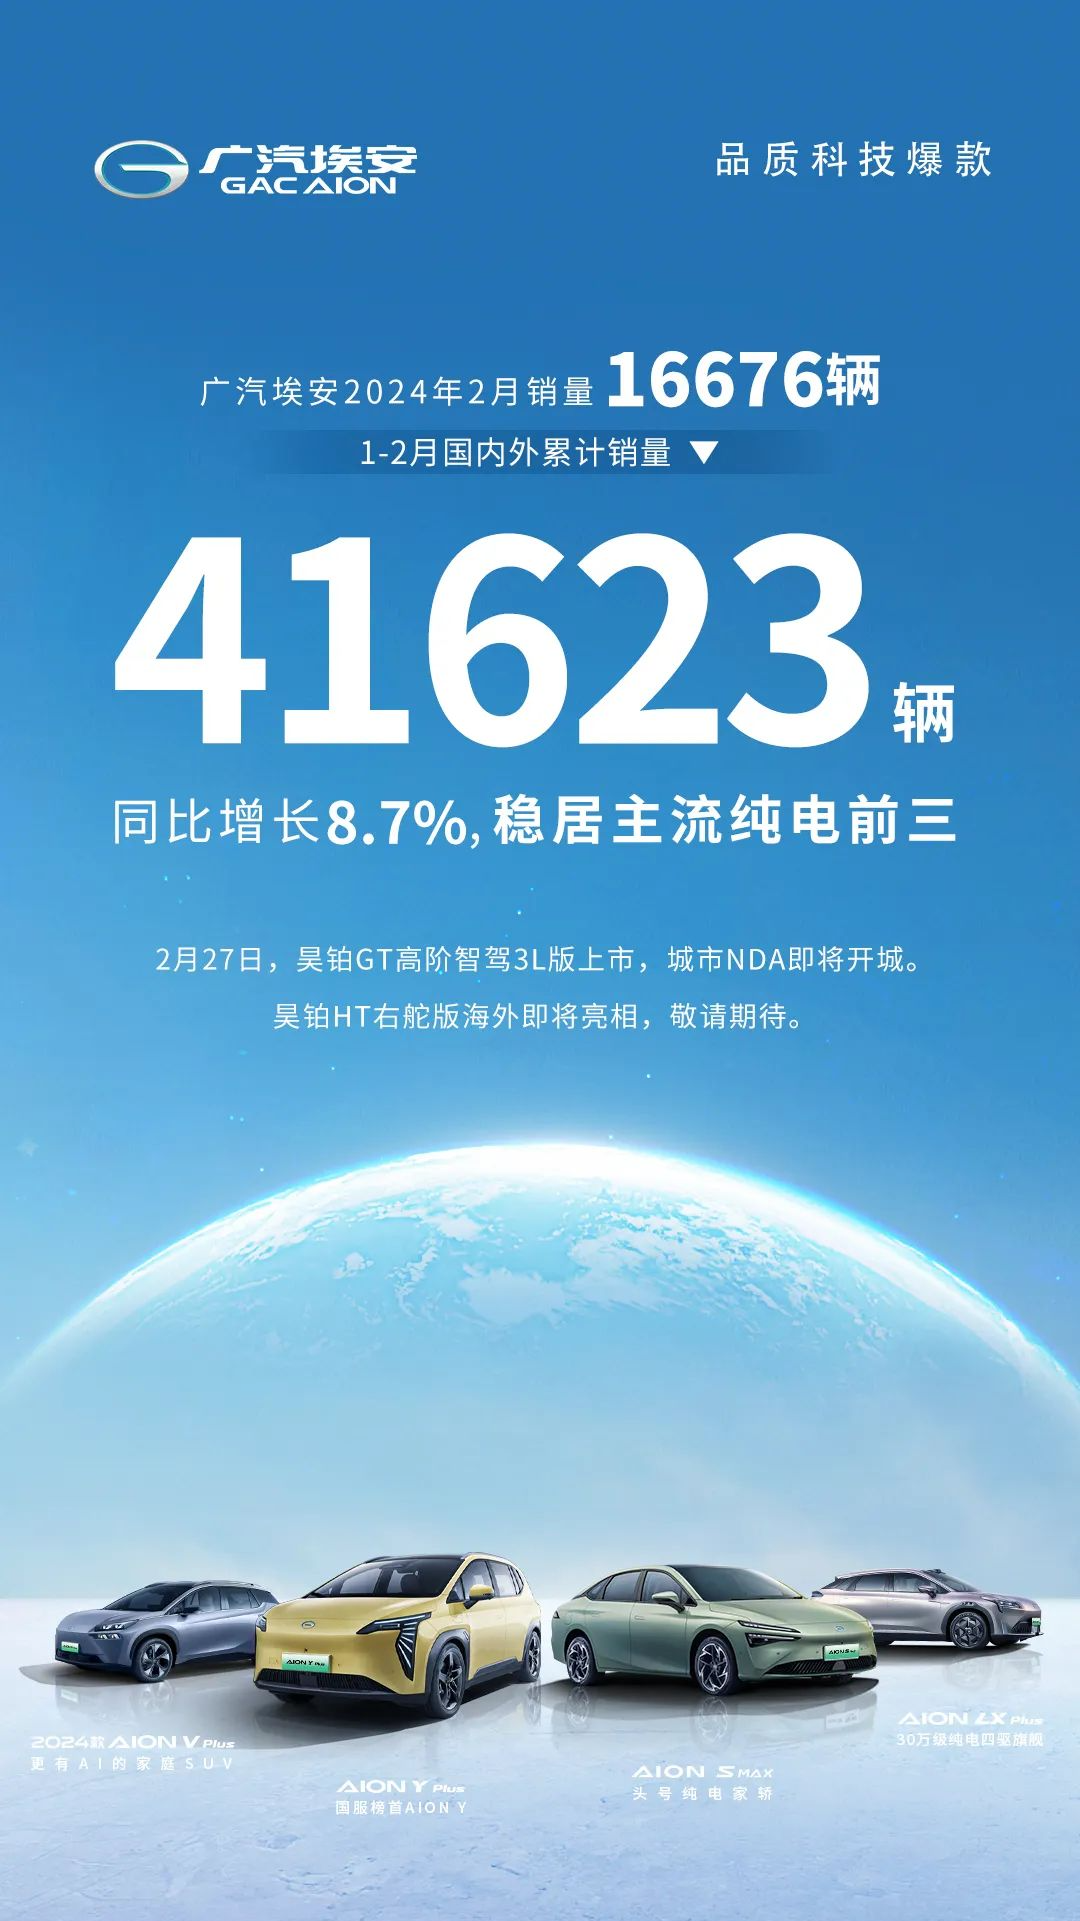 广汽埃安 2 月销量 16676 辆同比降 44.6%，1-2 月国内外累销 41623 辆增 8.7%